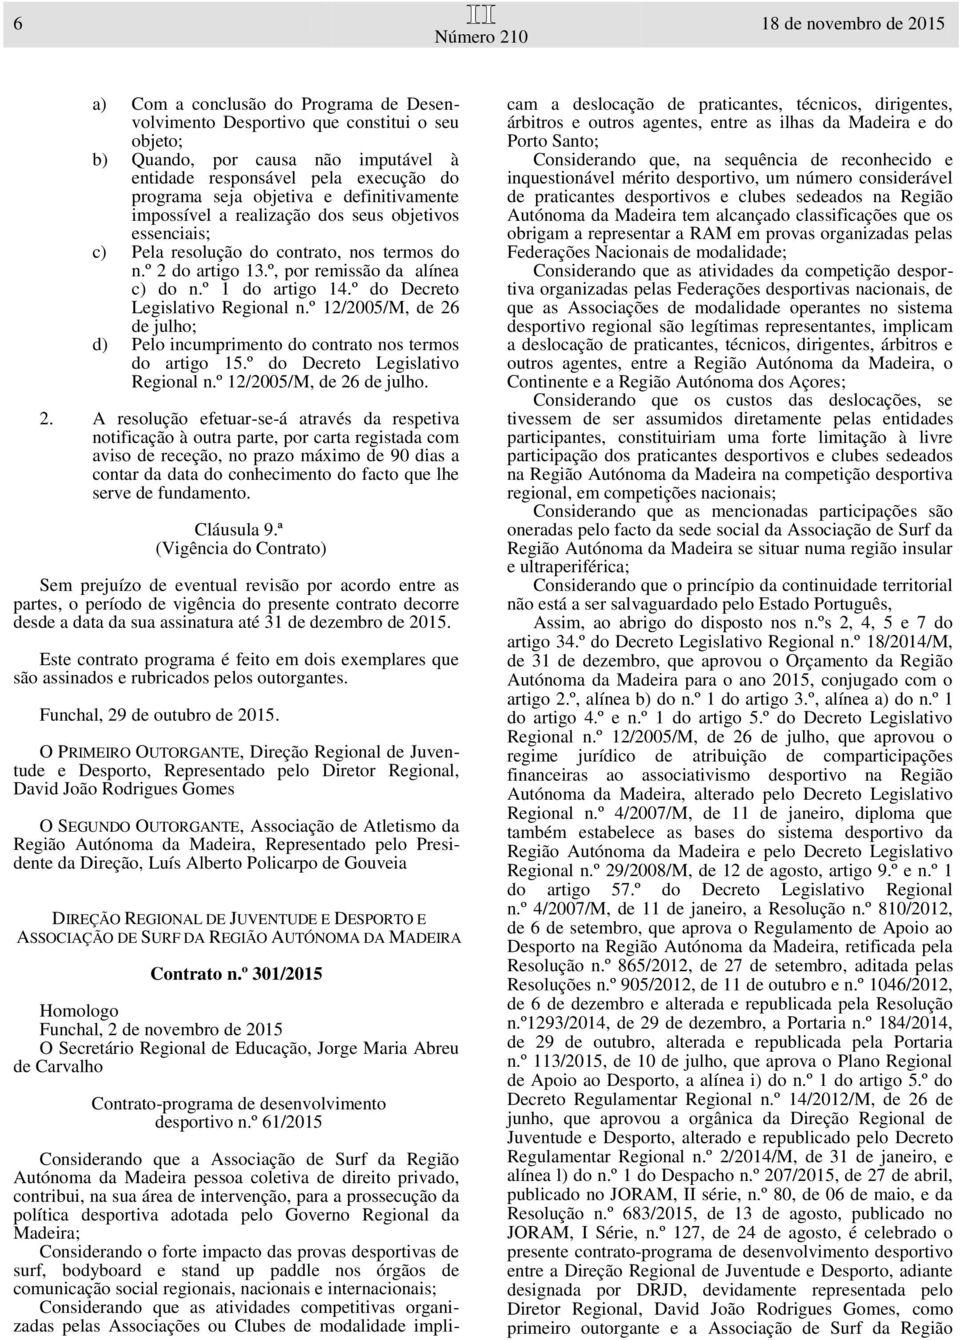 º 1 do artigo 14.º do Decreto Legislativo Regional n.º 12/2005/M, de 26